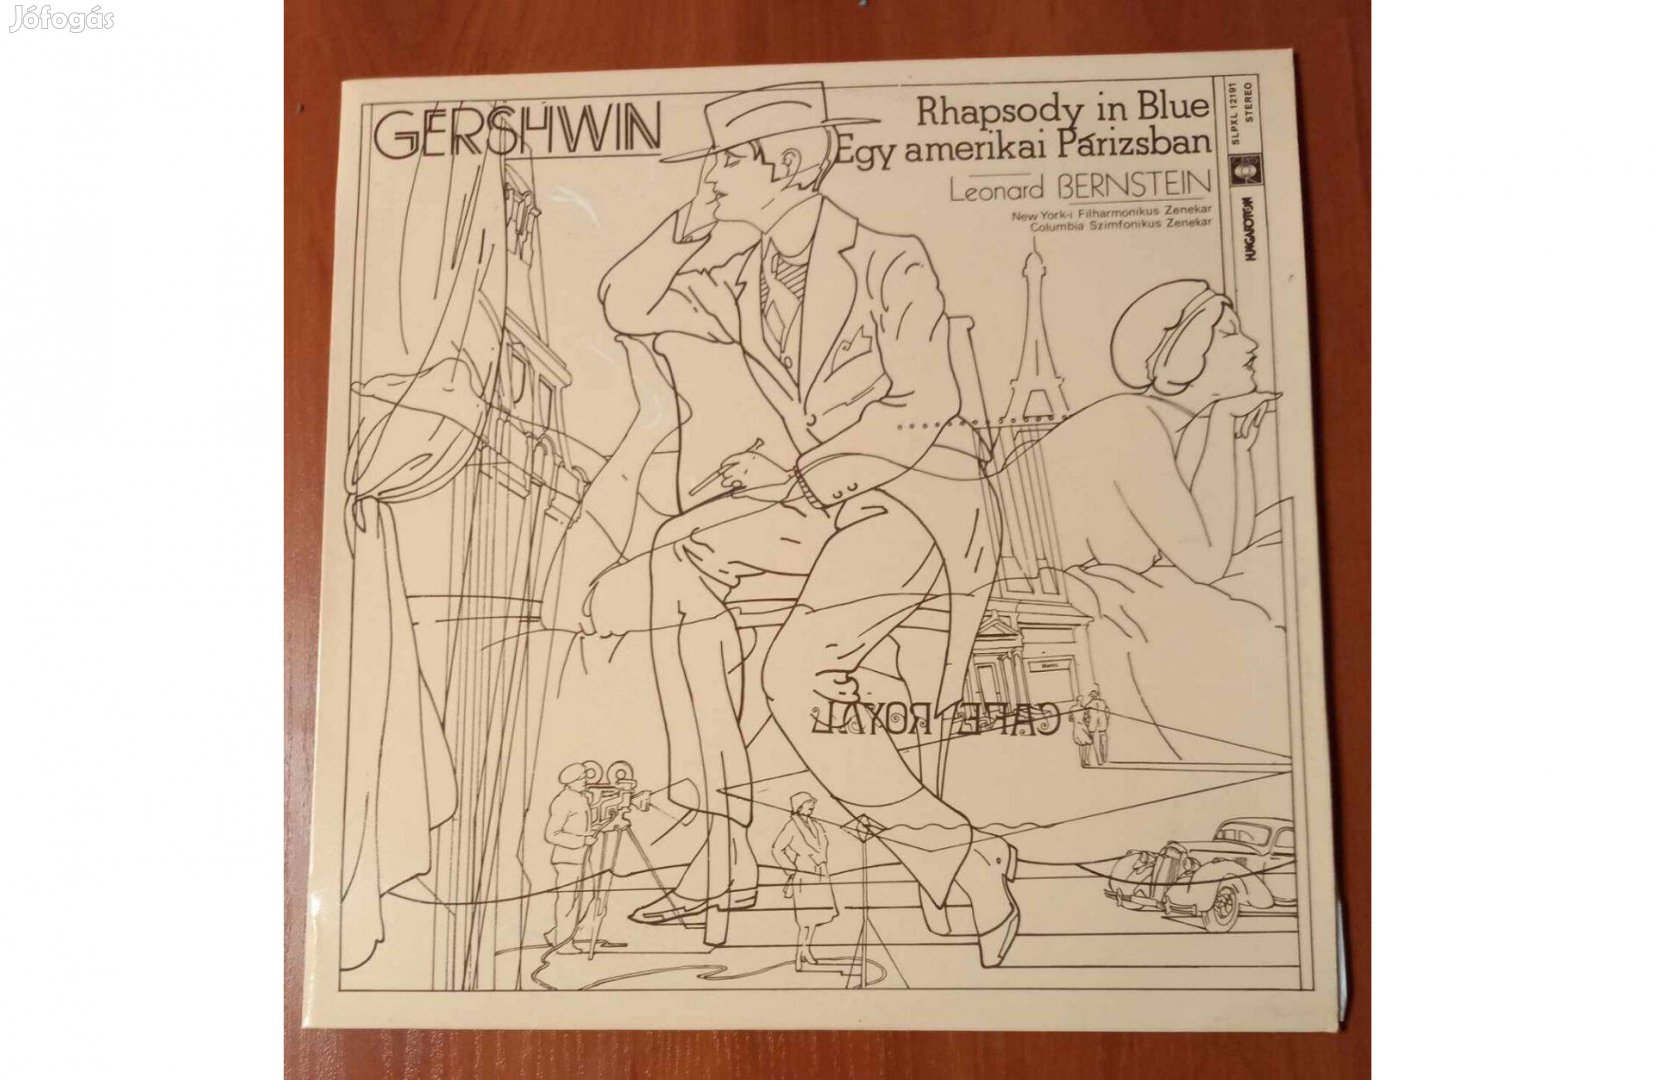 Gershwin: Rhapsody in Blue - Bakelit LP Slpxl 12191